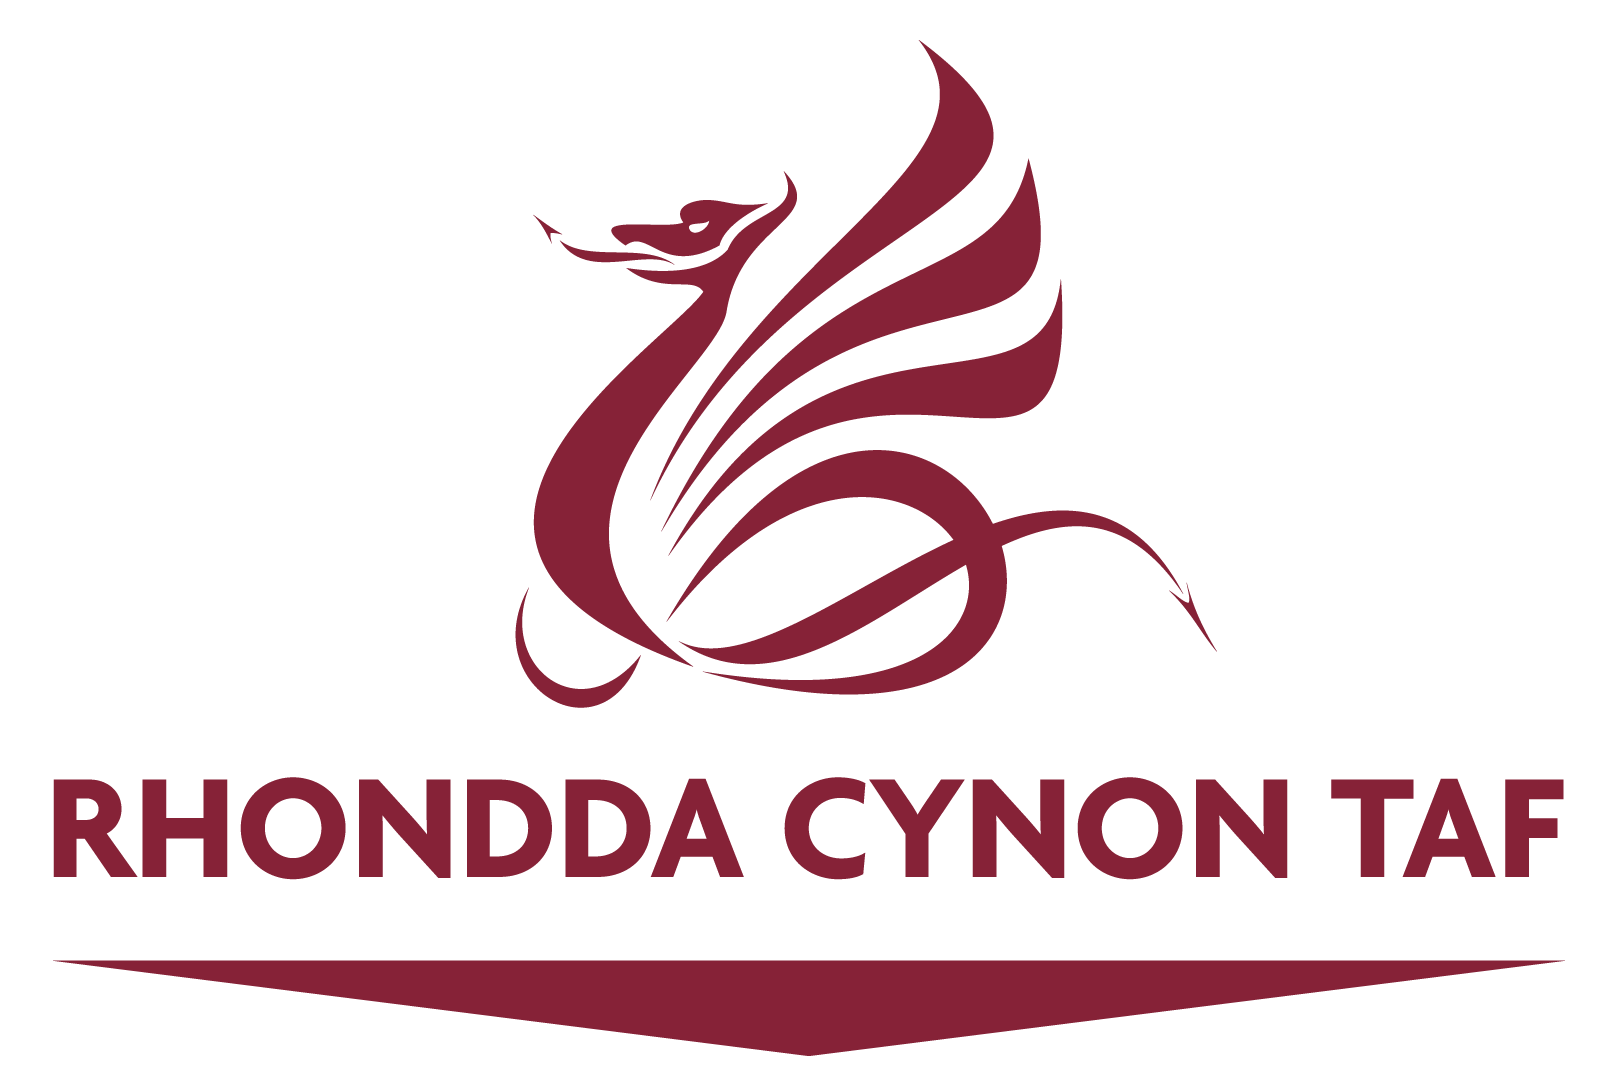 logo for Rhondda Cynon Taf County Borough Council